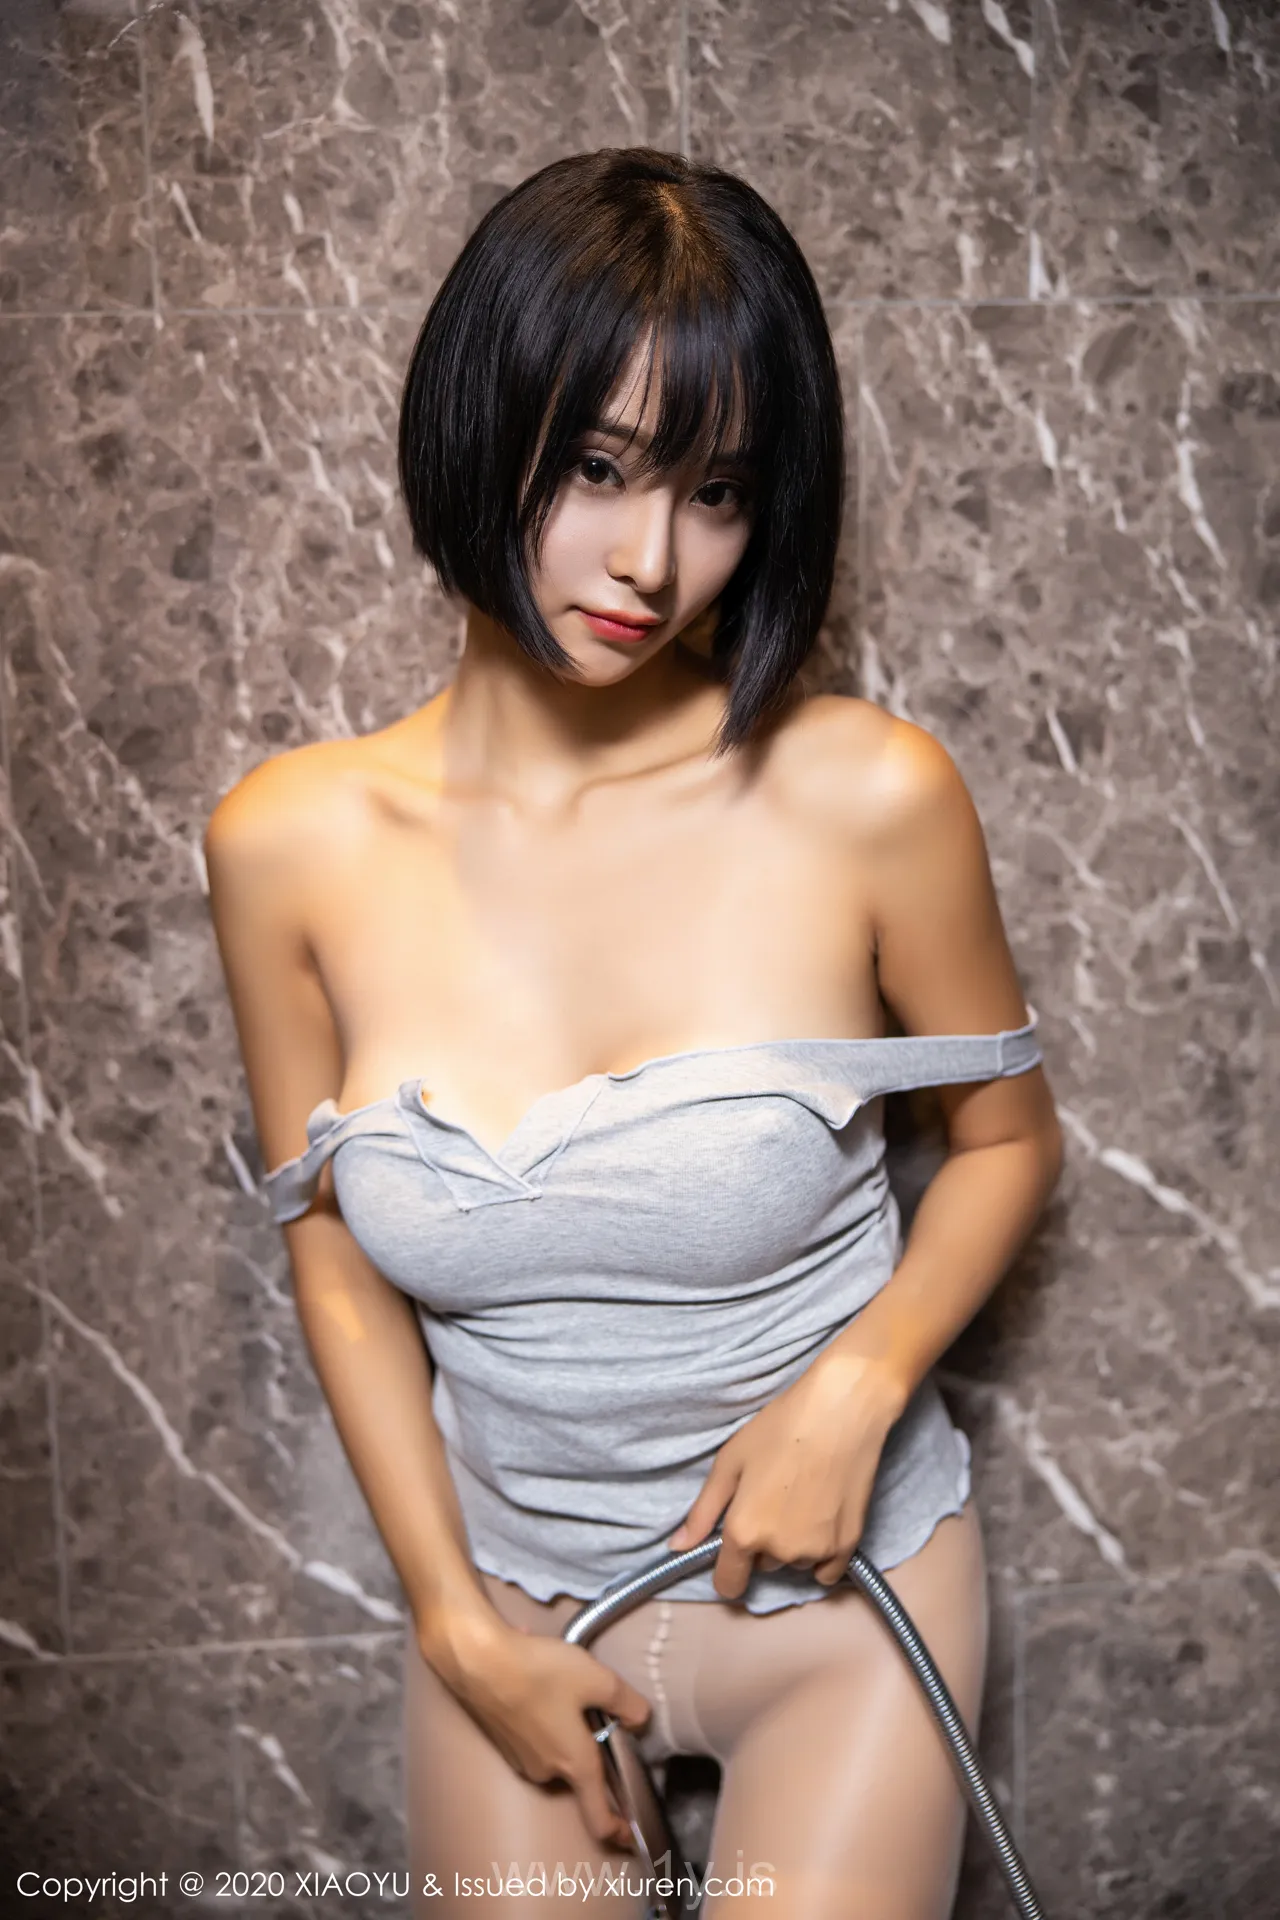 语画界 VOL.285 蓝夏Akasha Lively & Attractive Chinese Angel 蓝夏Akasha